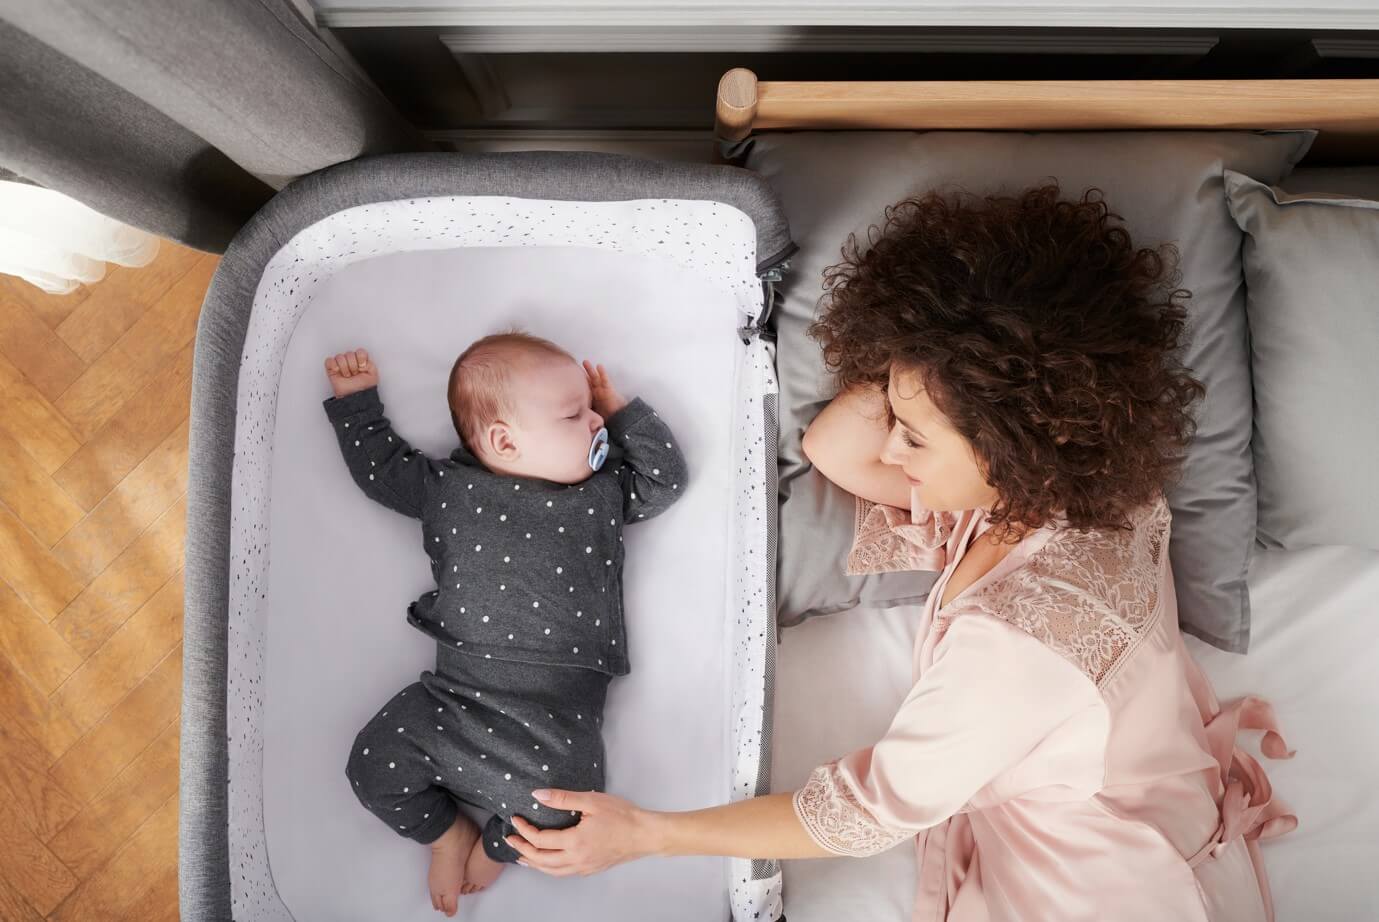 Ciemnowłosa kobieta leży na łóżku, obok niej śpi w dostawce dziecko. Kobieta uśmiecha się, dziecko w body z długim rękawem śpi spokojnie